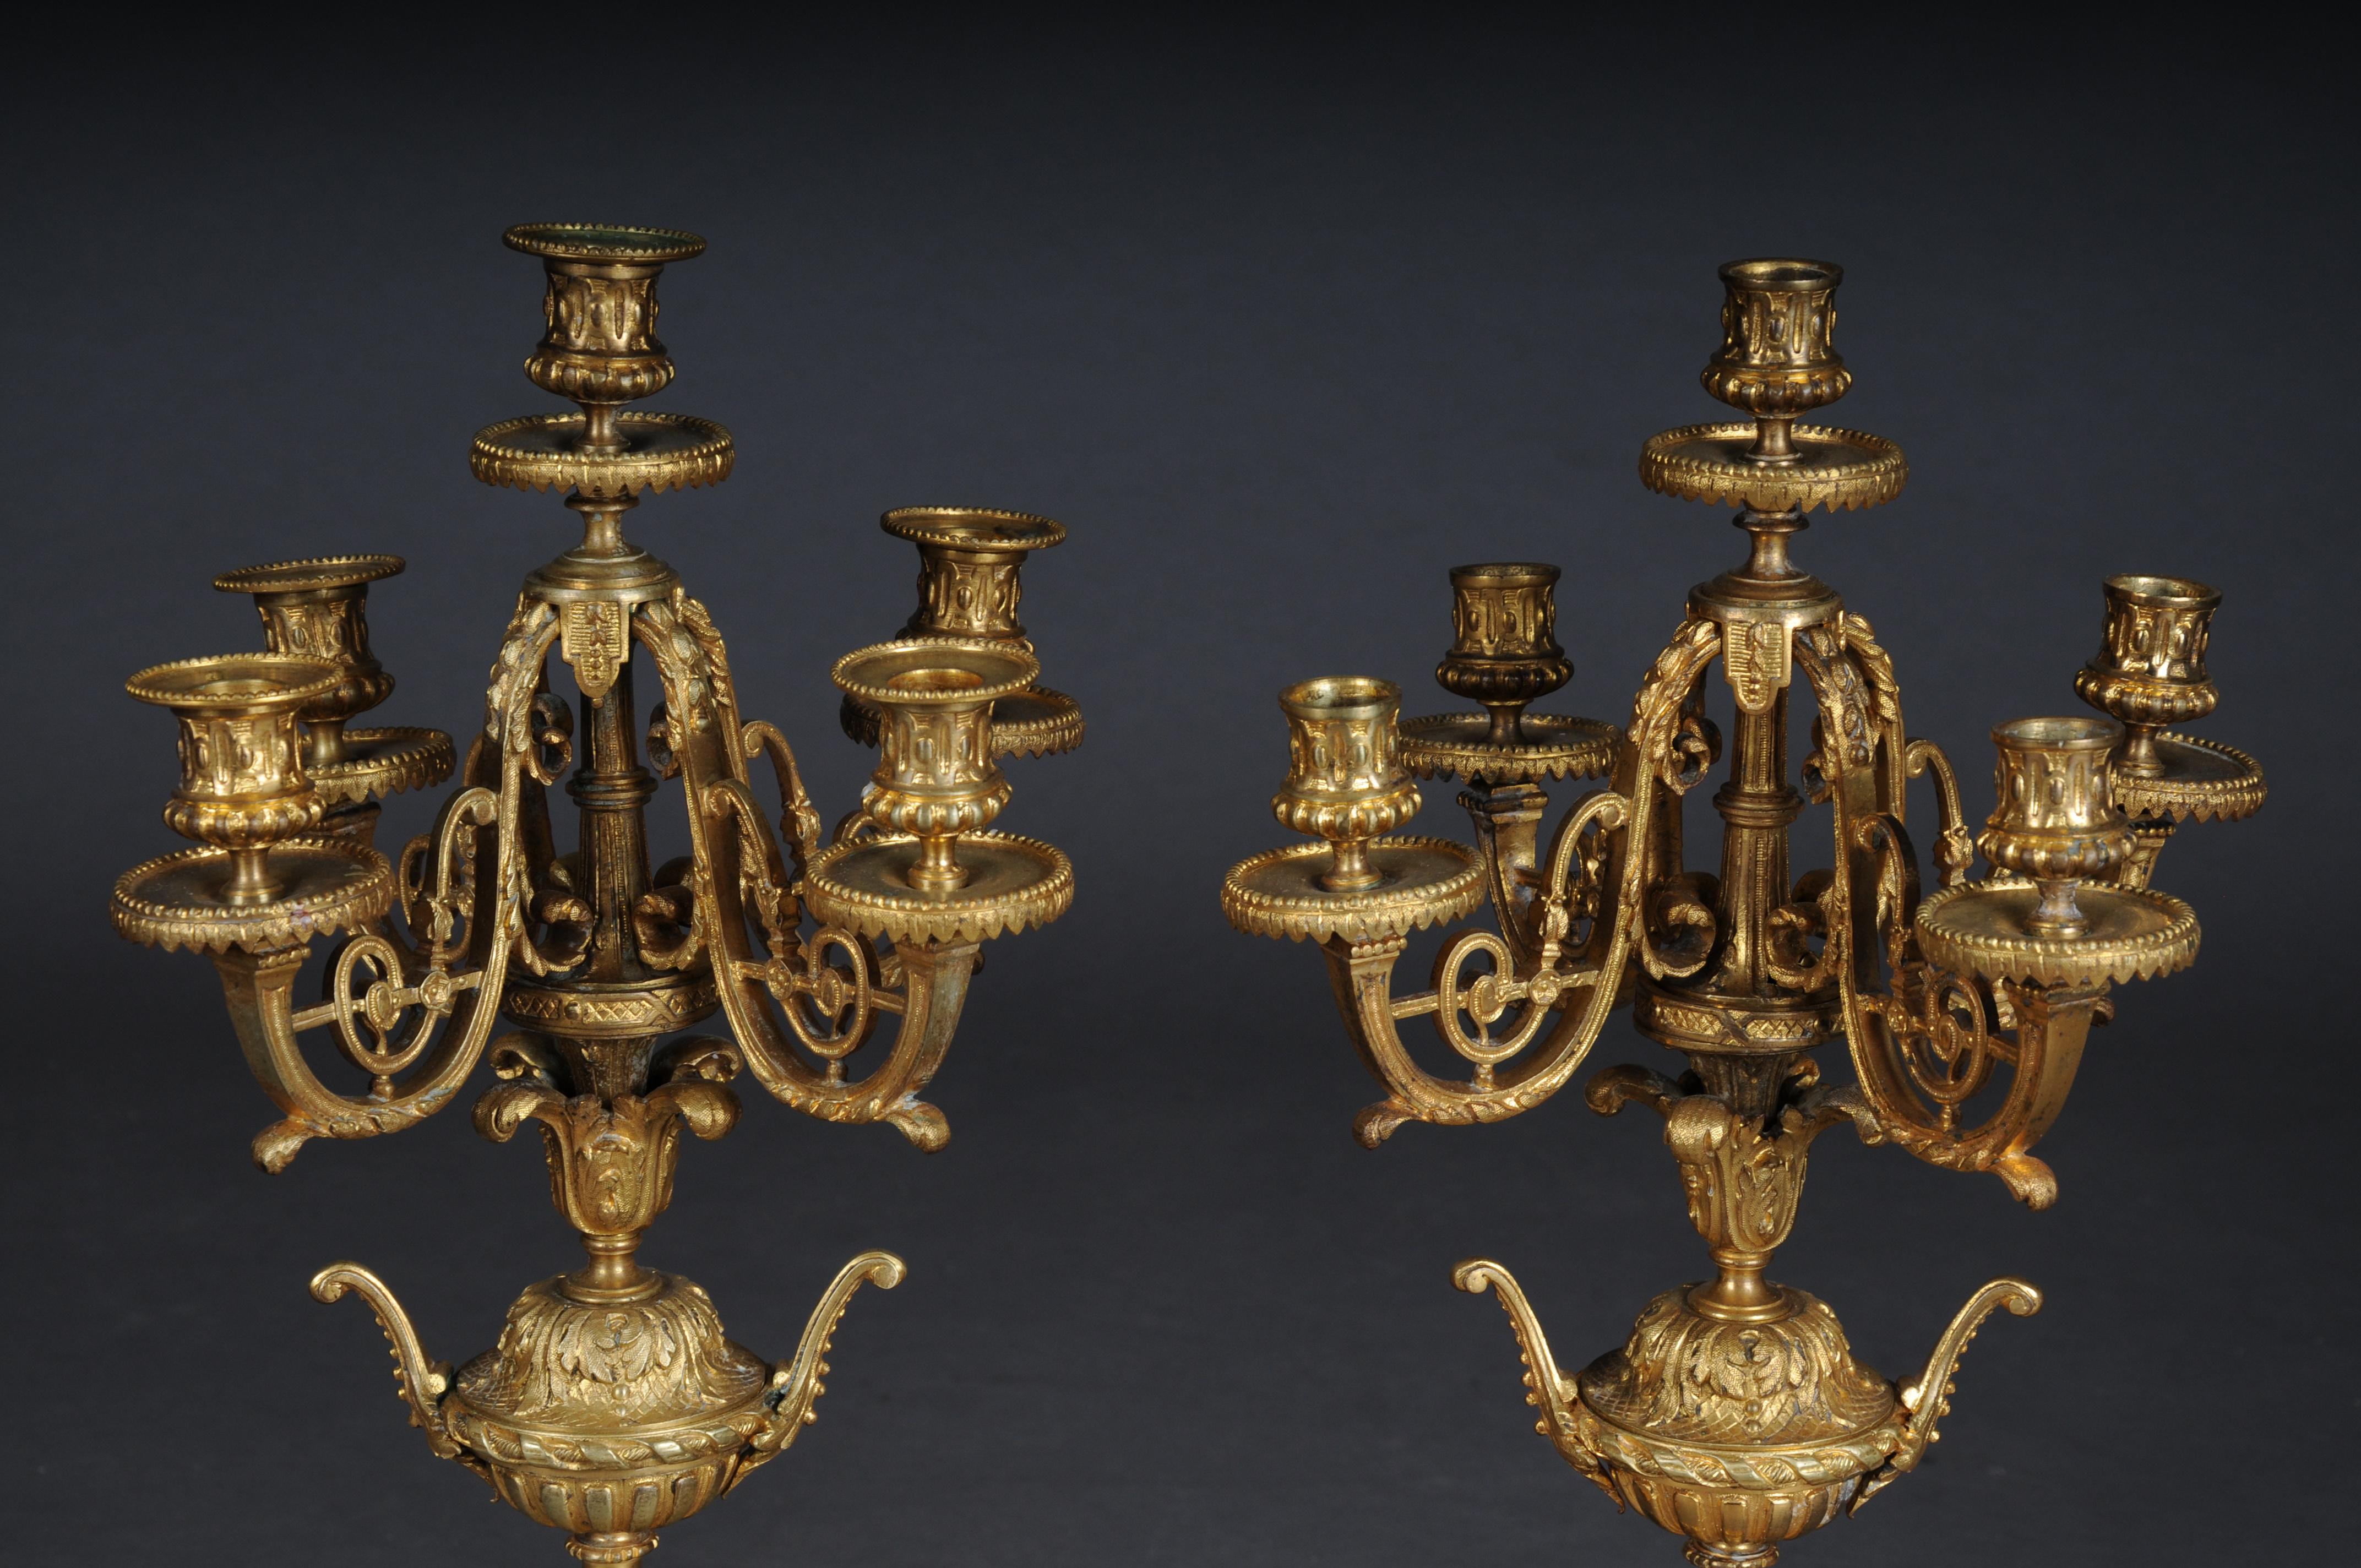 Paar (2) französische Historismus-Kerzenleuchter, vergoldete Bronze um 1880

Verschnörkelte Kerzenhalter, vergoldete Bronze. Kerzenständer mit je 5 Flammen, unterer Teil teilweise auf Voluten- und Tatzenfüßen stehend. Sehr dekorativ und